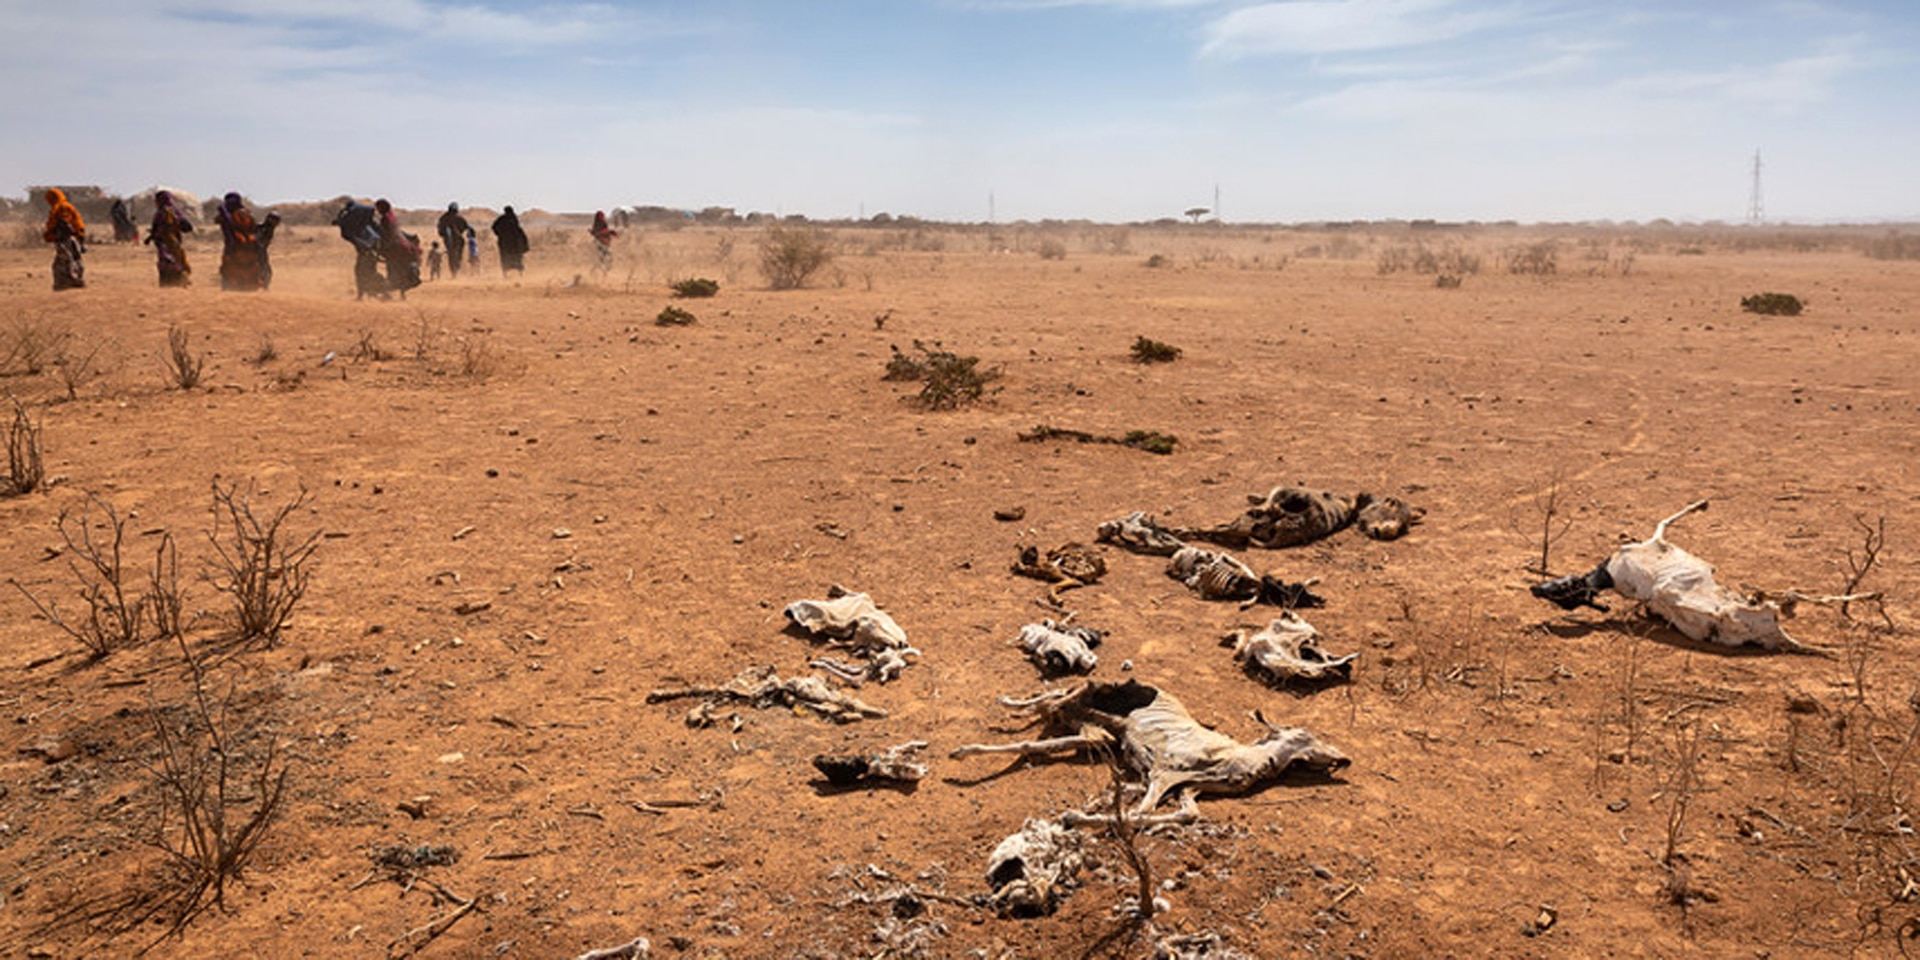 Donne e bambini camminano davanti a carcasse di animali presso il villaggio di Sagalo, nella zona di Korahe, nella regione somala dell'Etiopia, 21 gennaio 2022